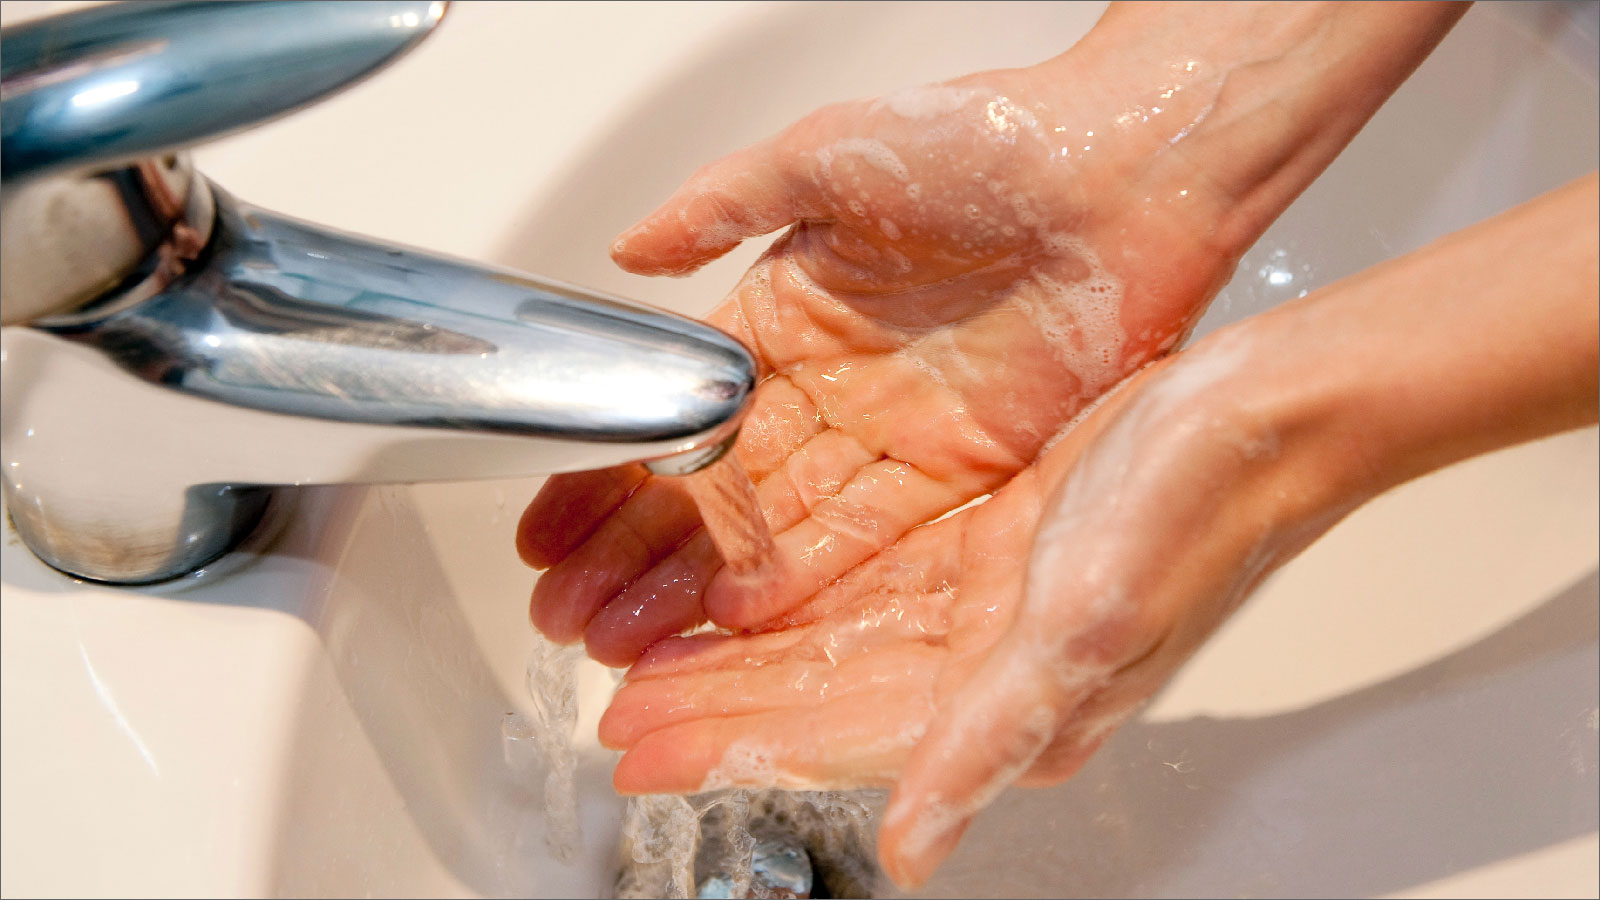 النظافة الشخصية تشمل غسل اليدين (الألمانية)